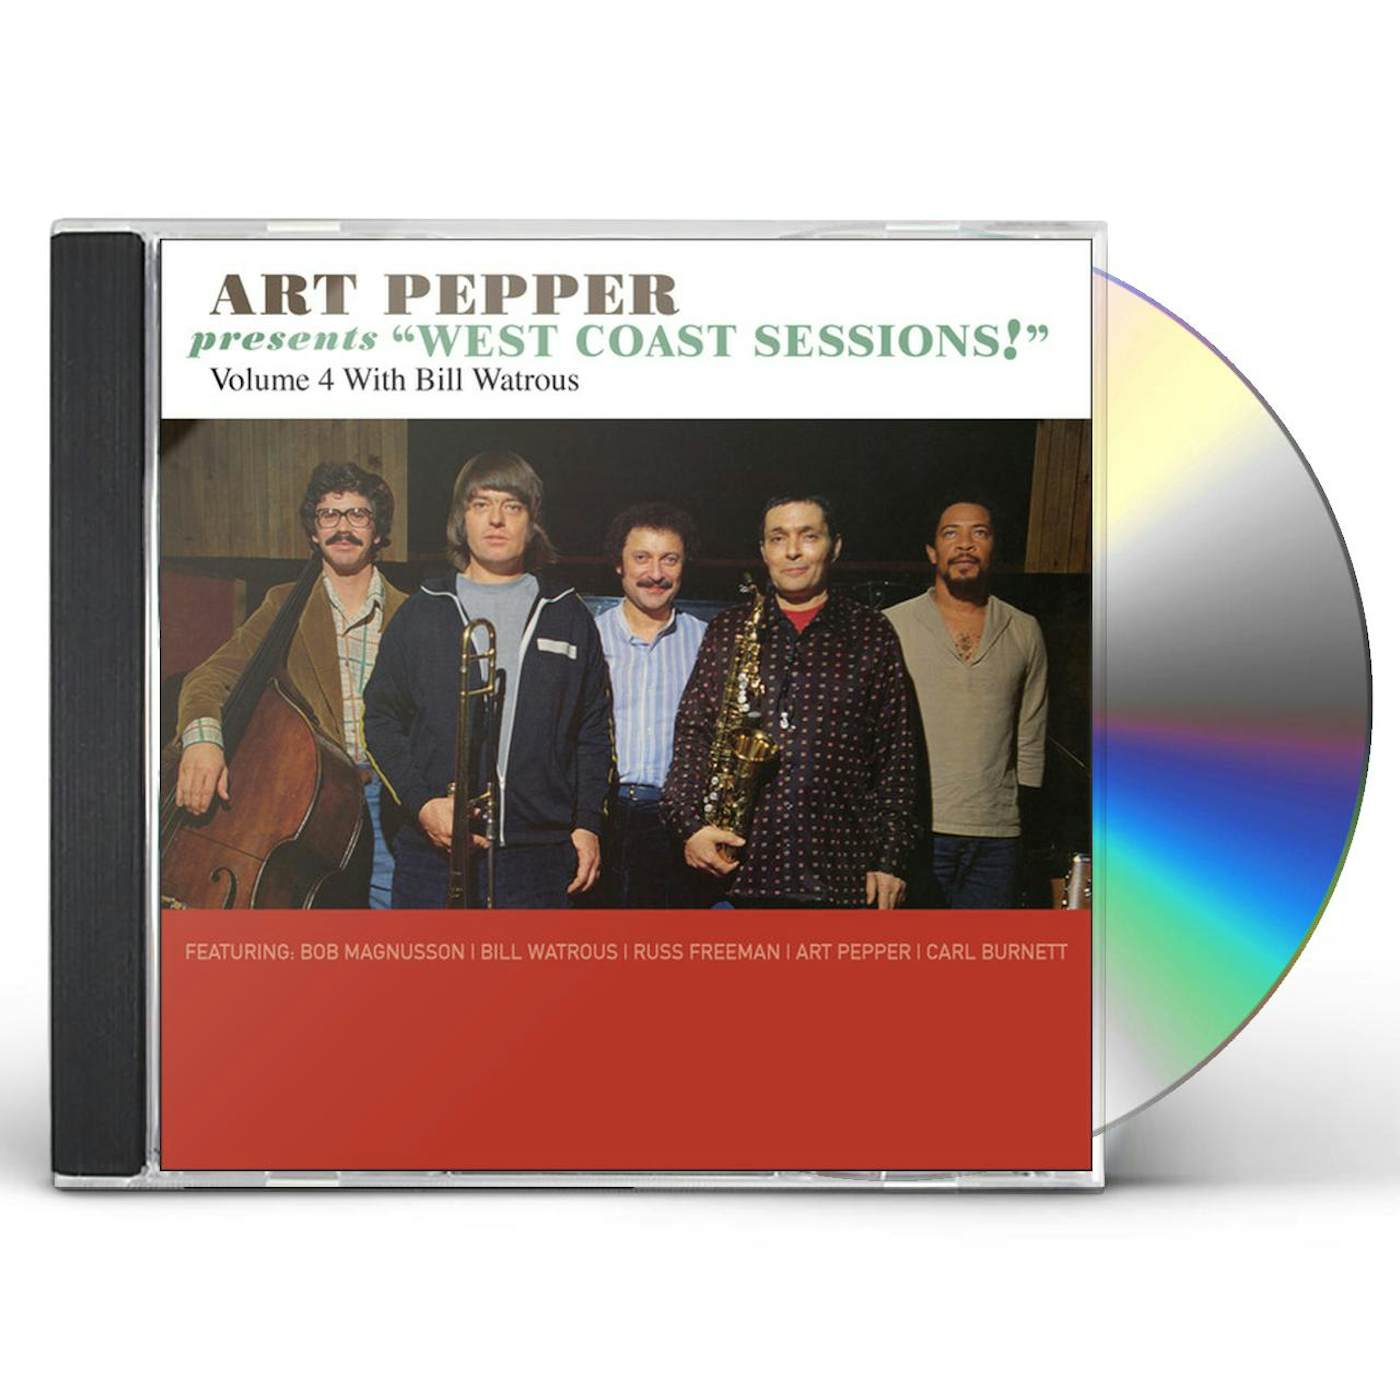 Art Pepper Shirts, Art Pepper Merch, Art Pepper Hoodies, Art Vinyl Records, Art Pepper Posters, Art Pepper Hats, Art Pepper CDs, Art Pepper Music, Art Pepper Merch Store